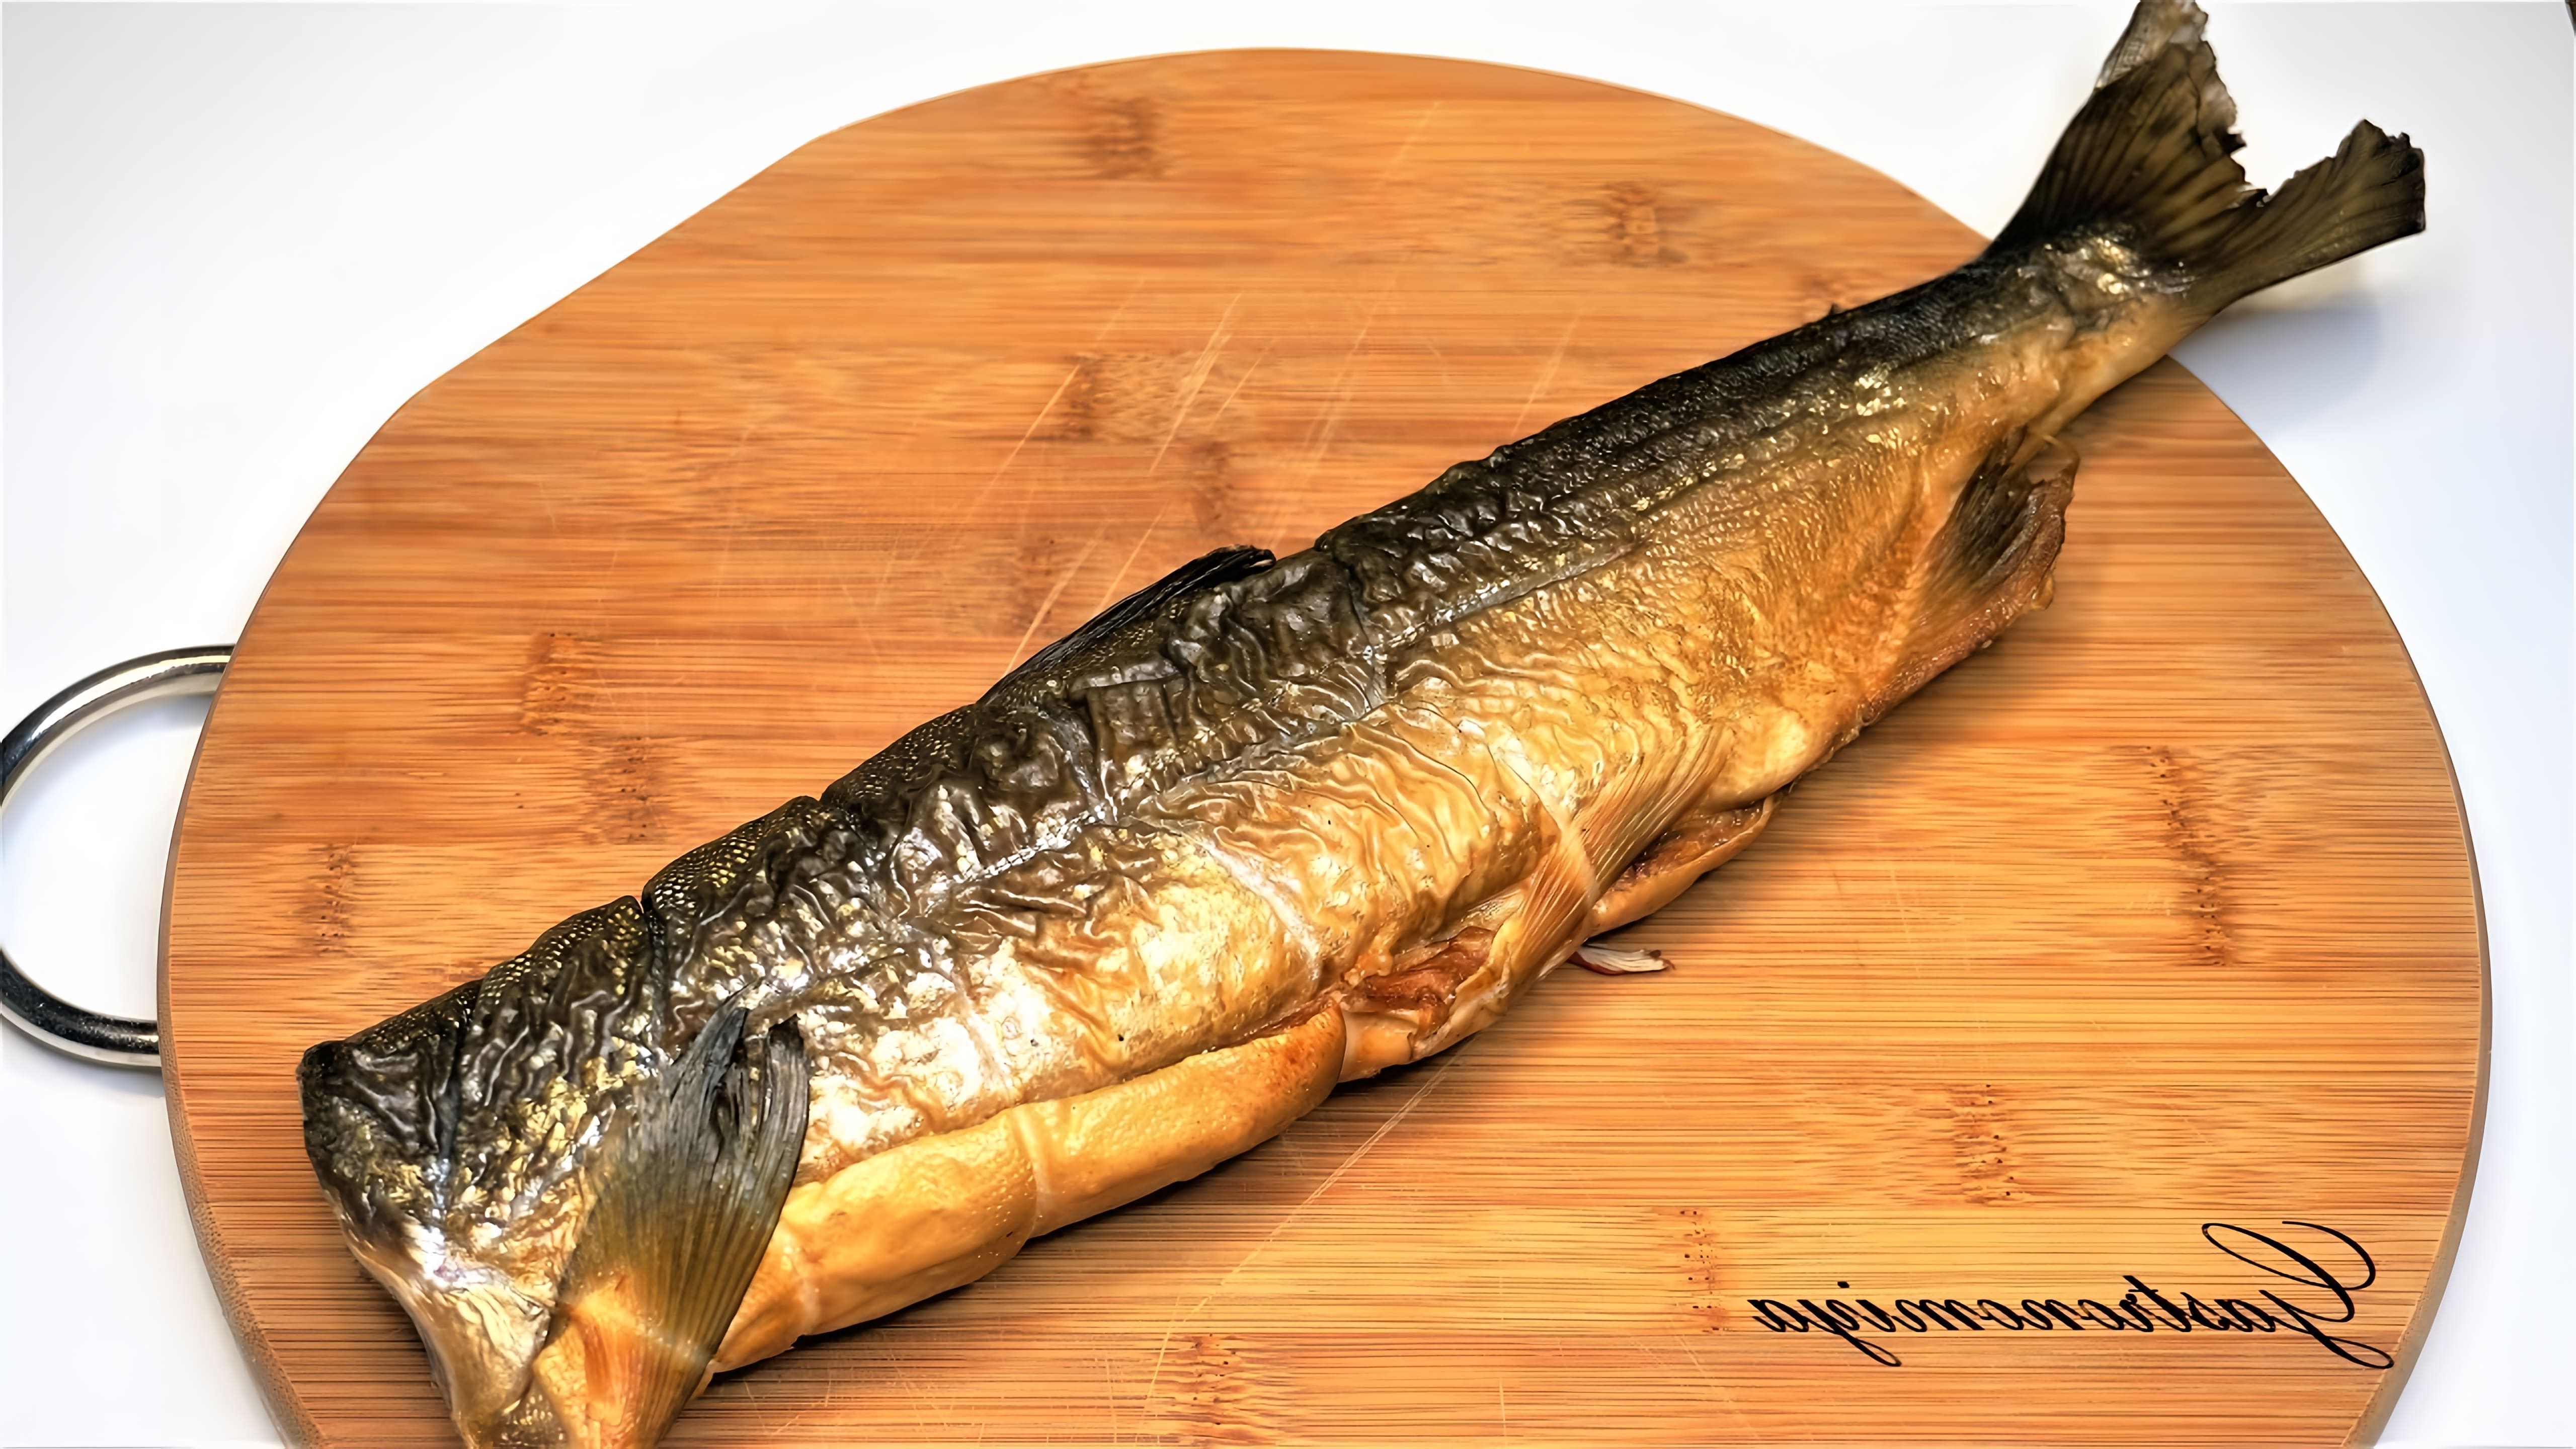 В этом видео демонстрируется рецепт нежного рыбного салата из горбуши горячего копчения